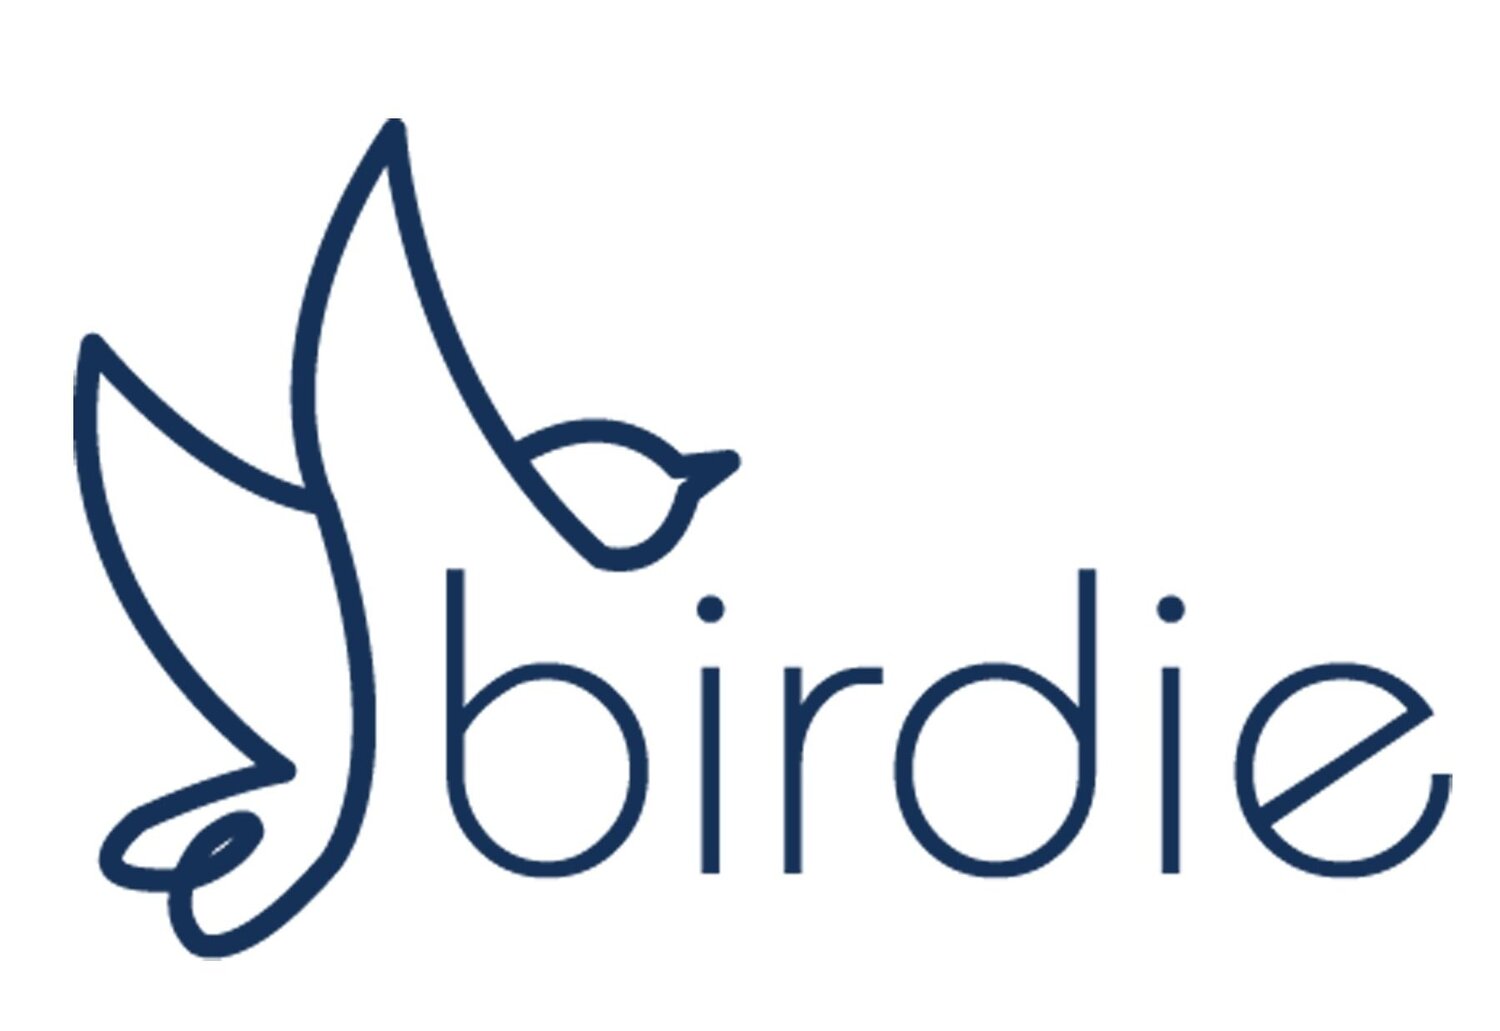 Birdie Break